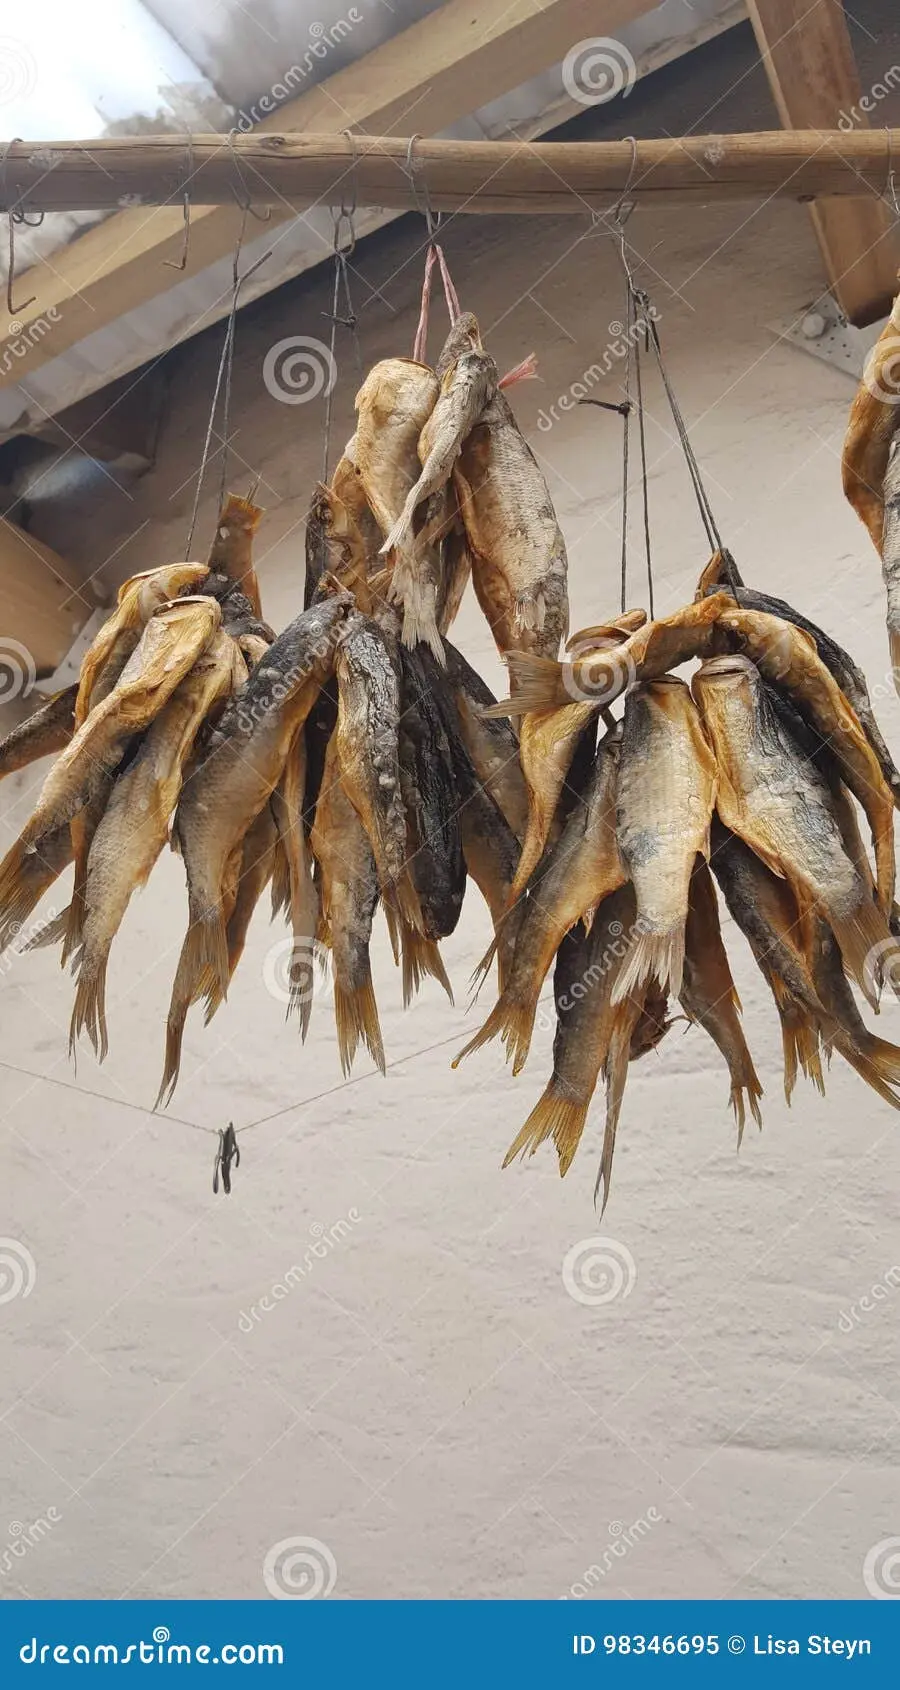 cecina pescado - Qué es la cecina en Argentina